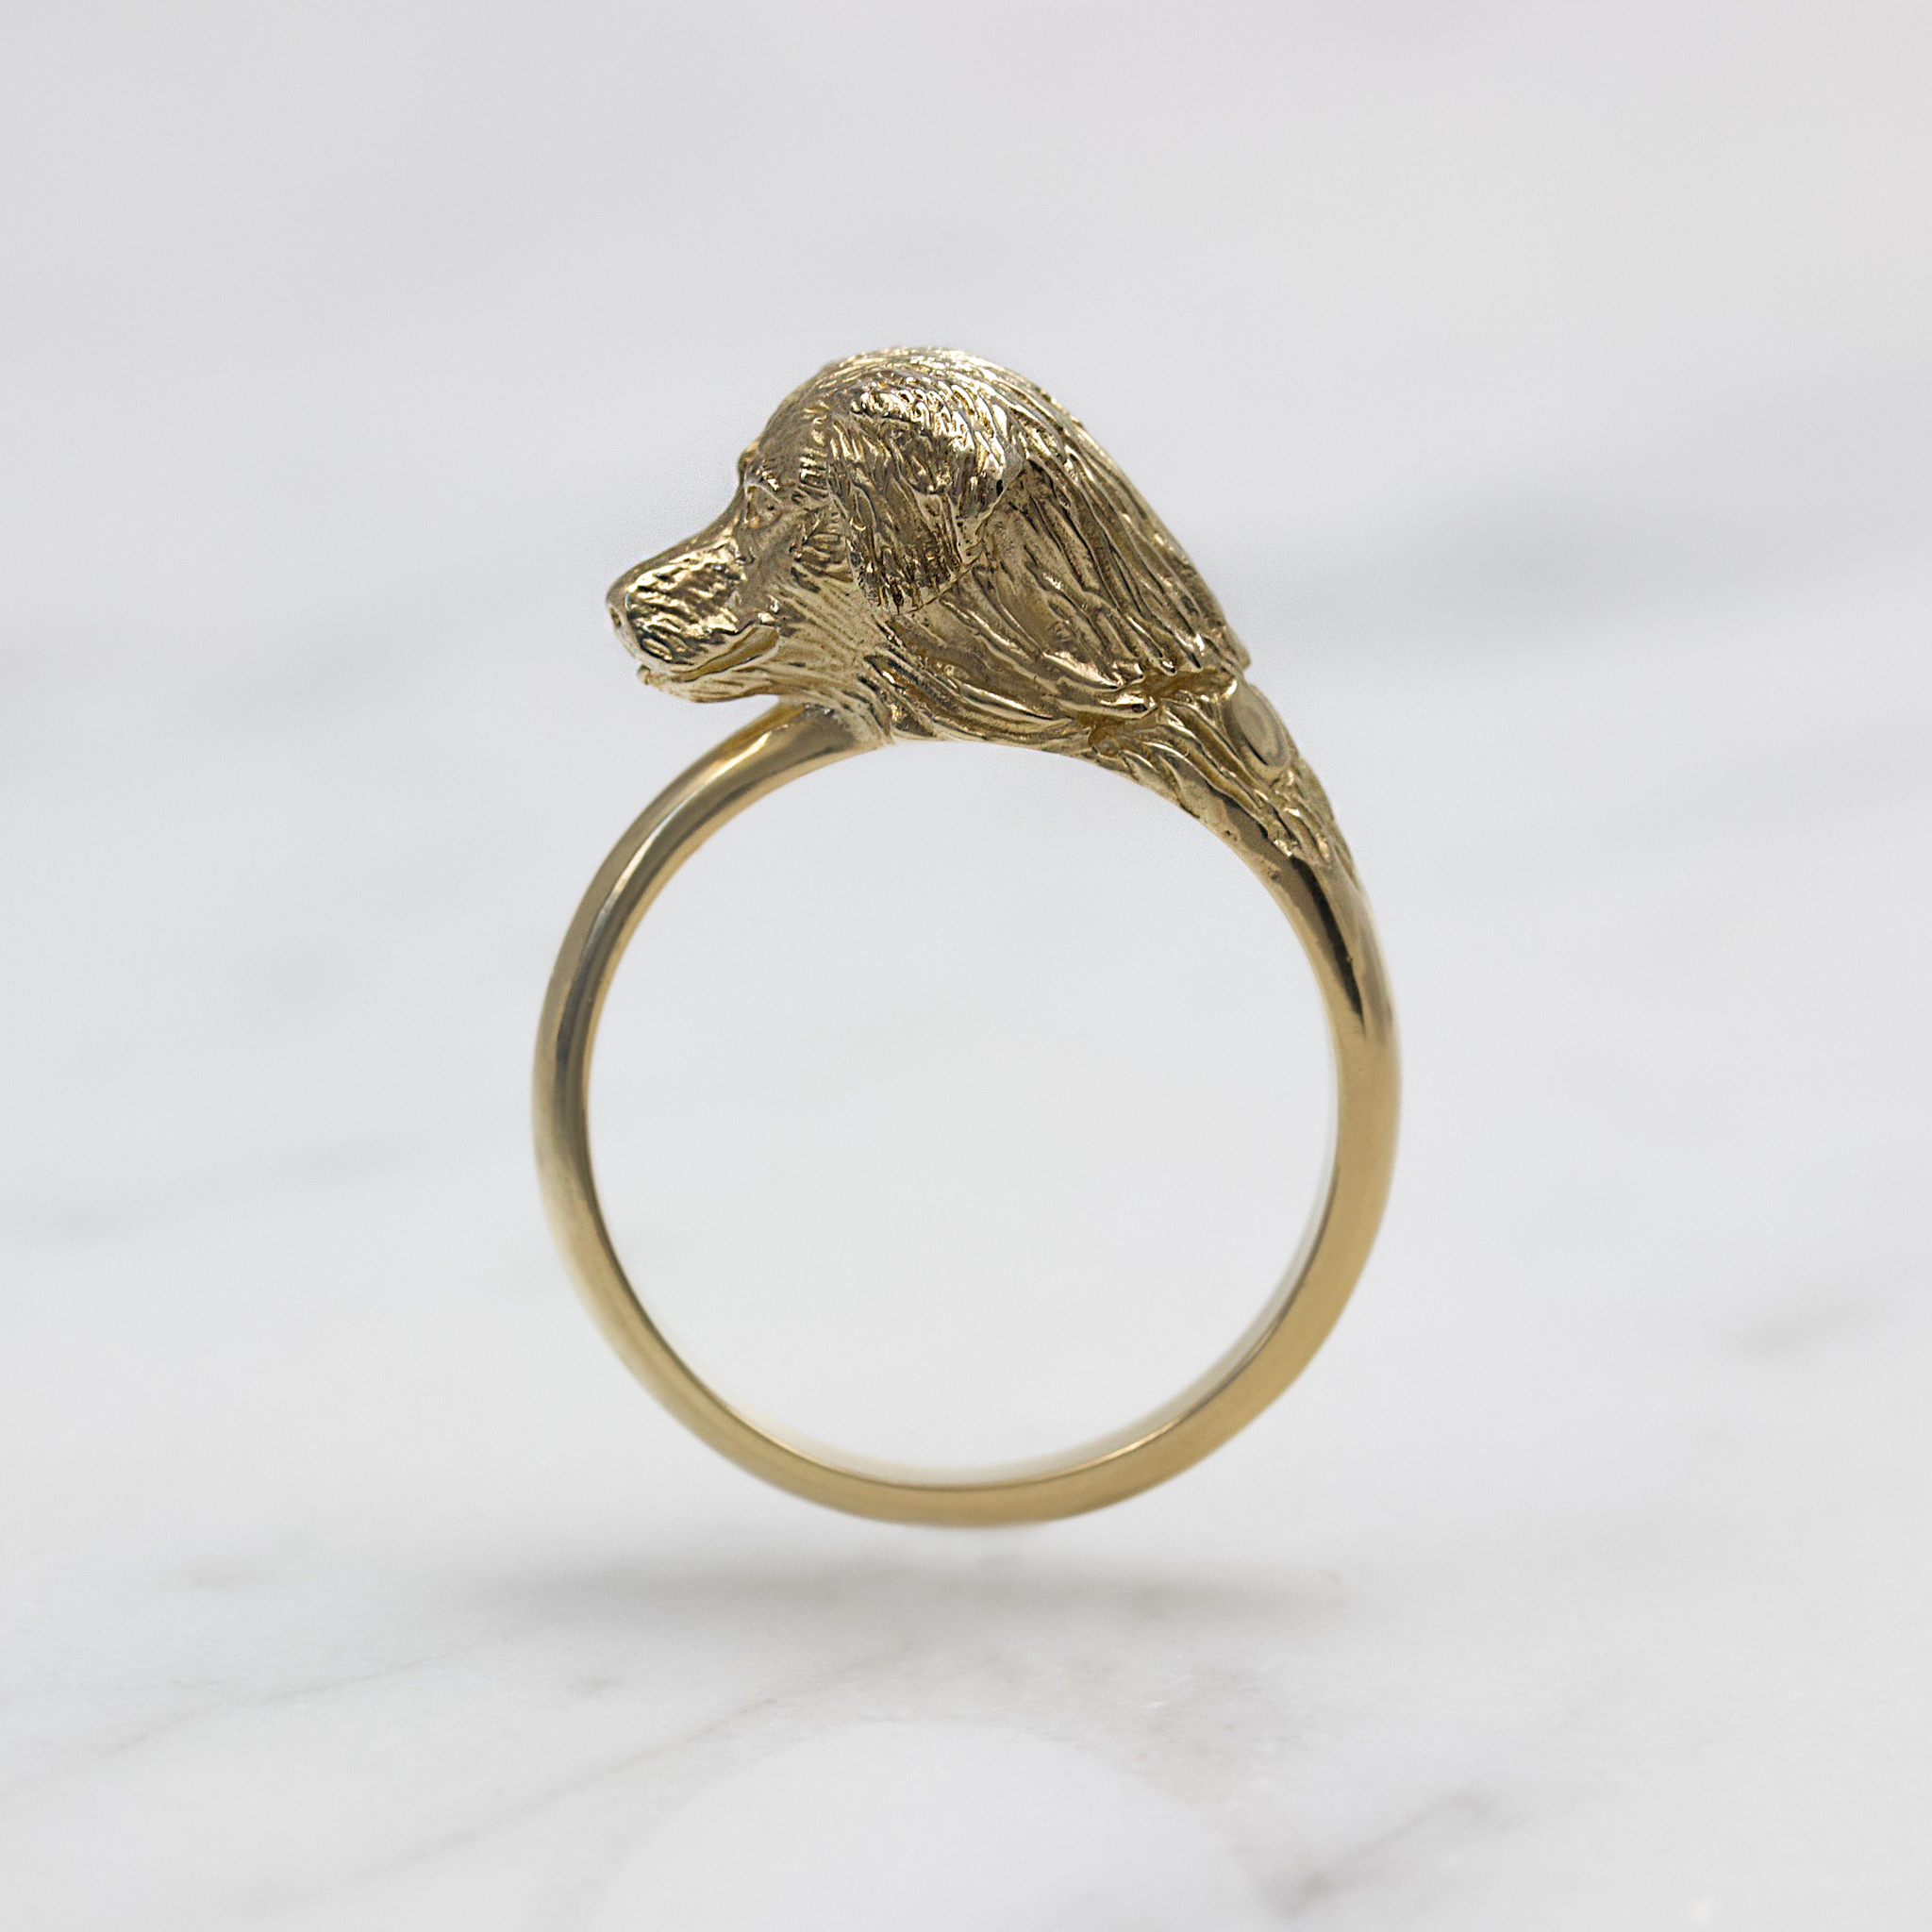 Golden Retriever Ring